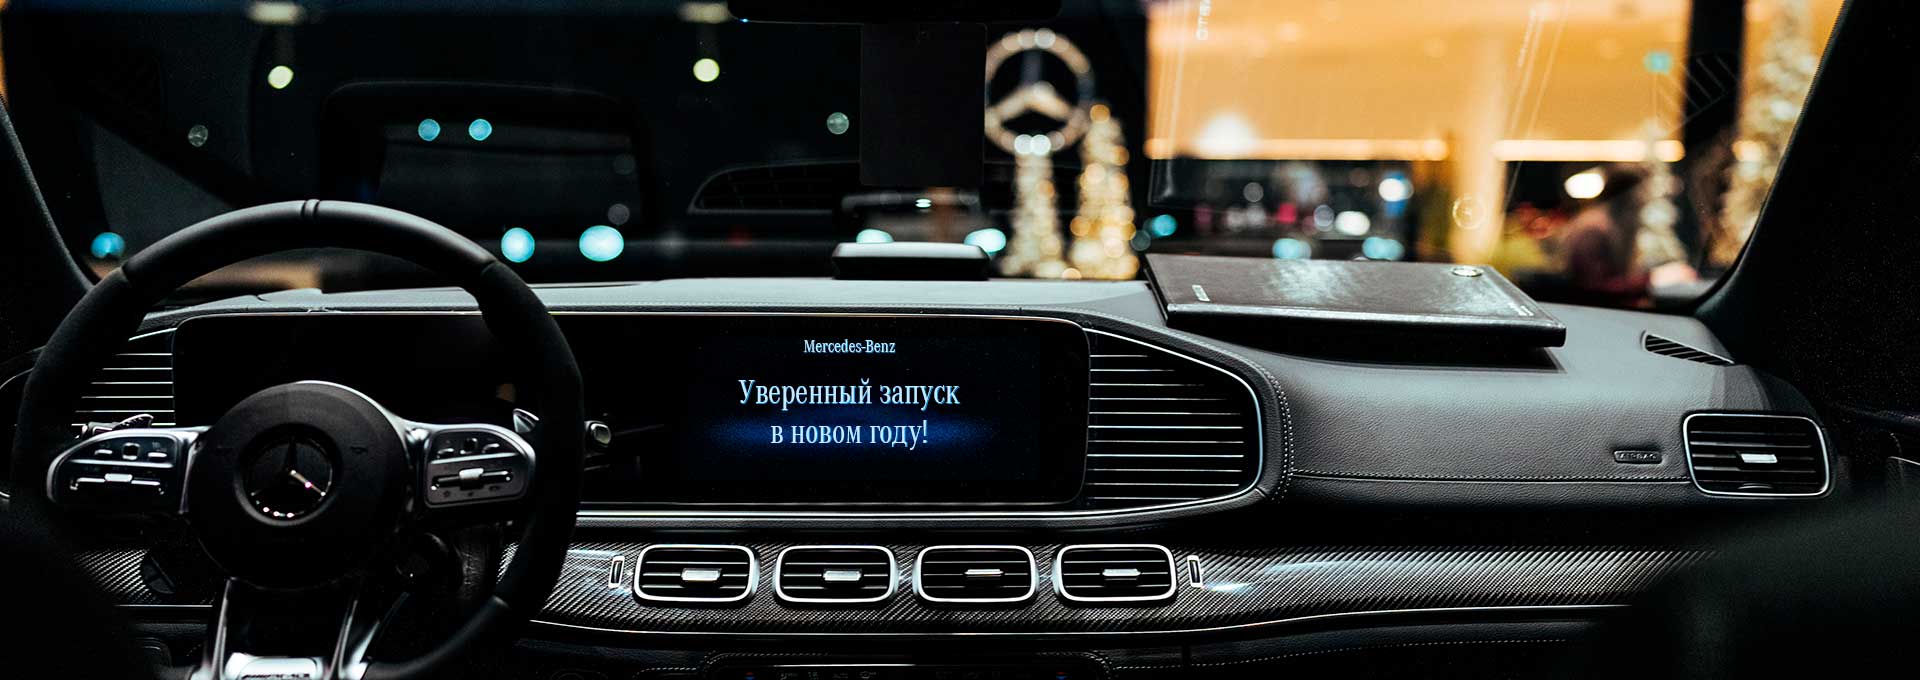 Официальный сервис Mercedes: сервисный центр Панавто в Москве